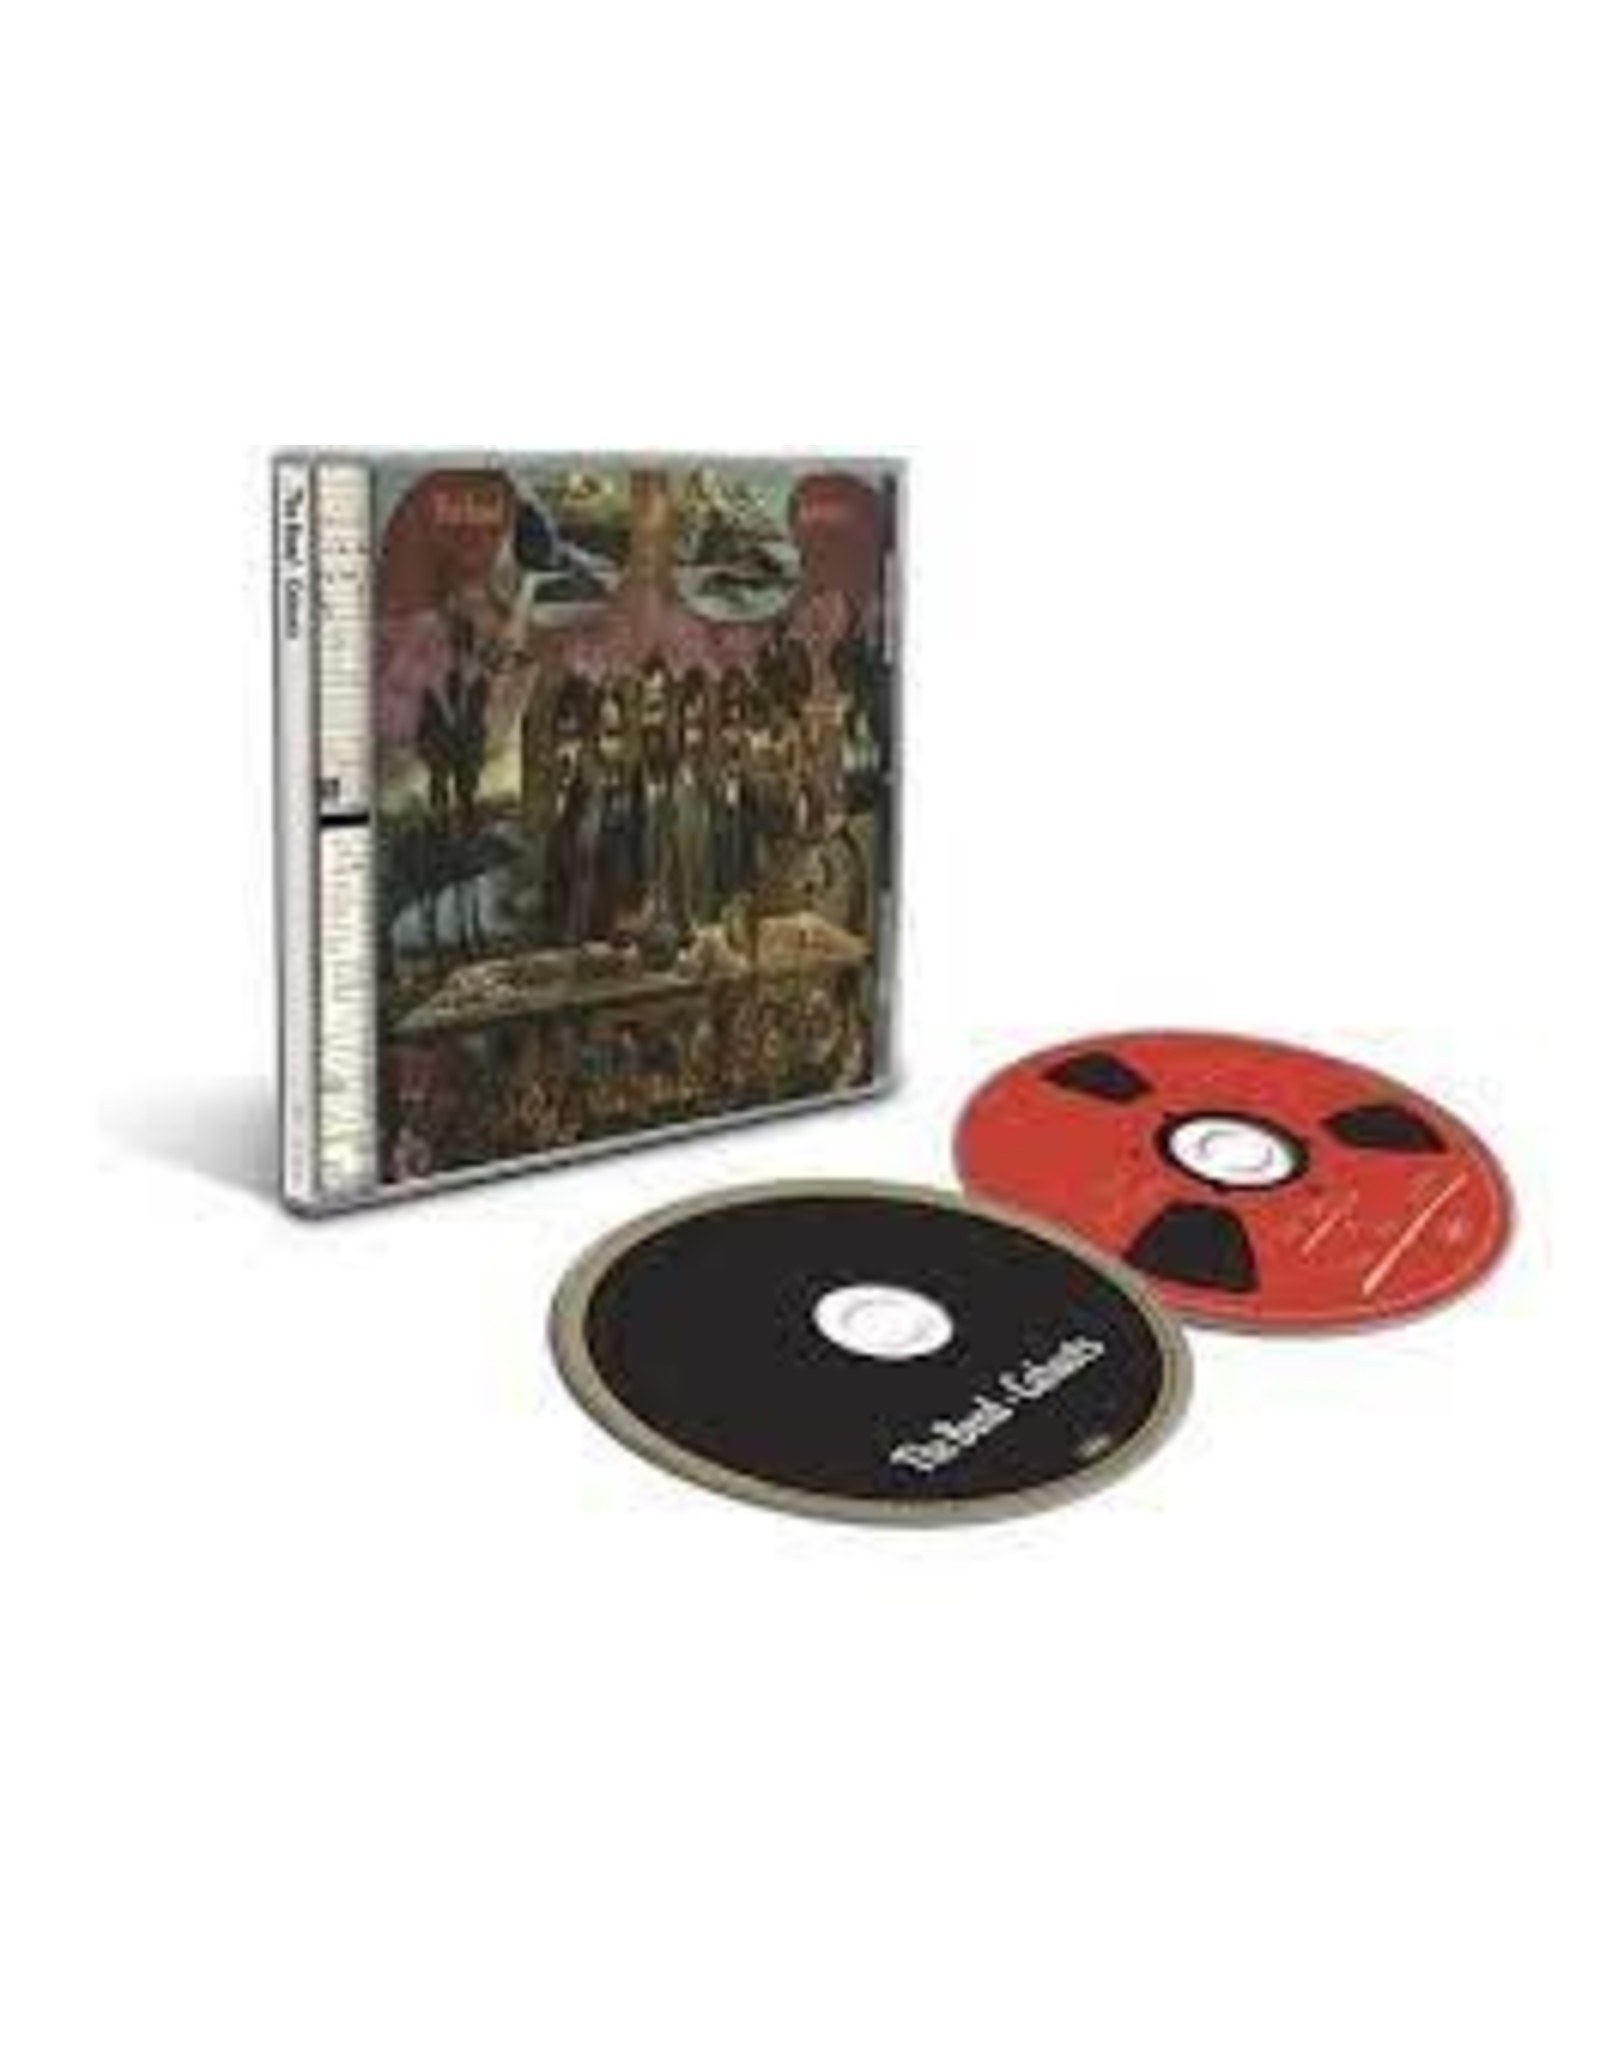 Band - Cahoots 50th Anniversary 2 CD